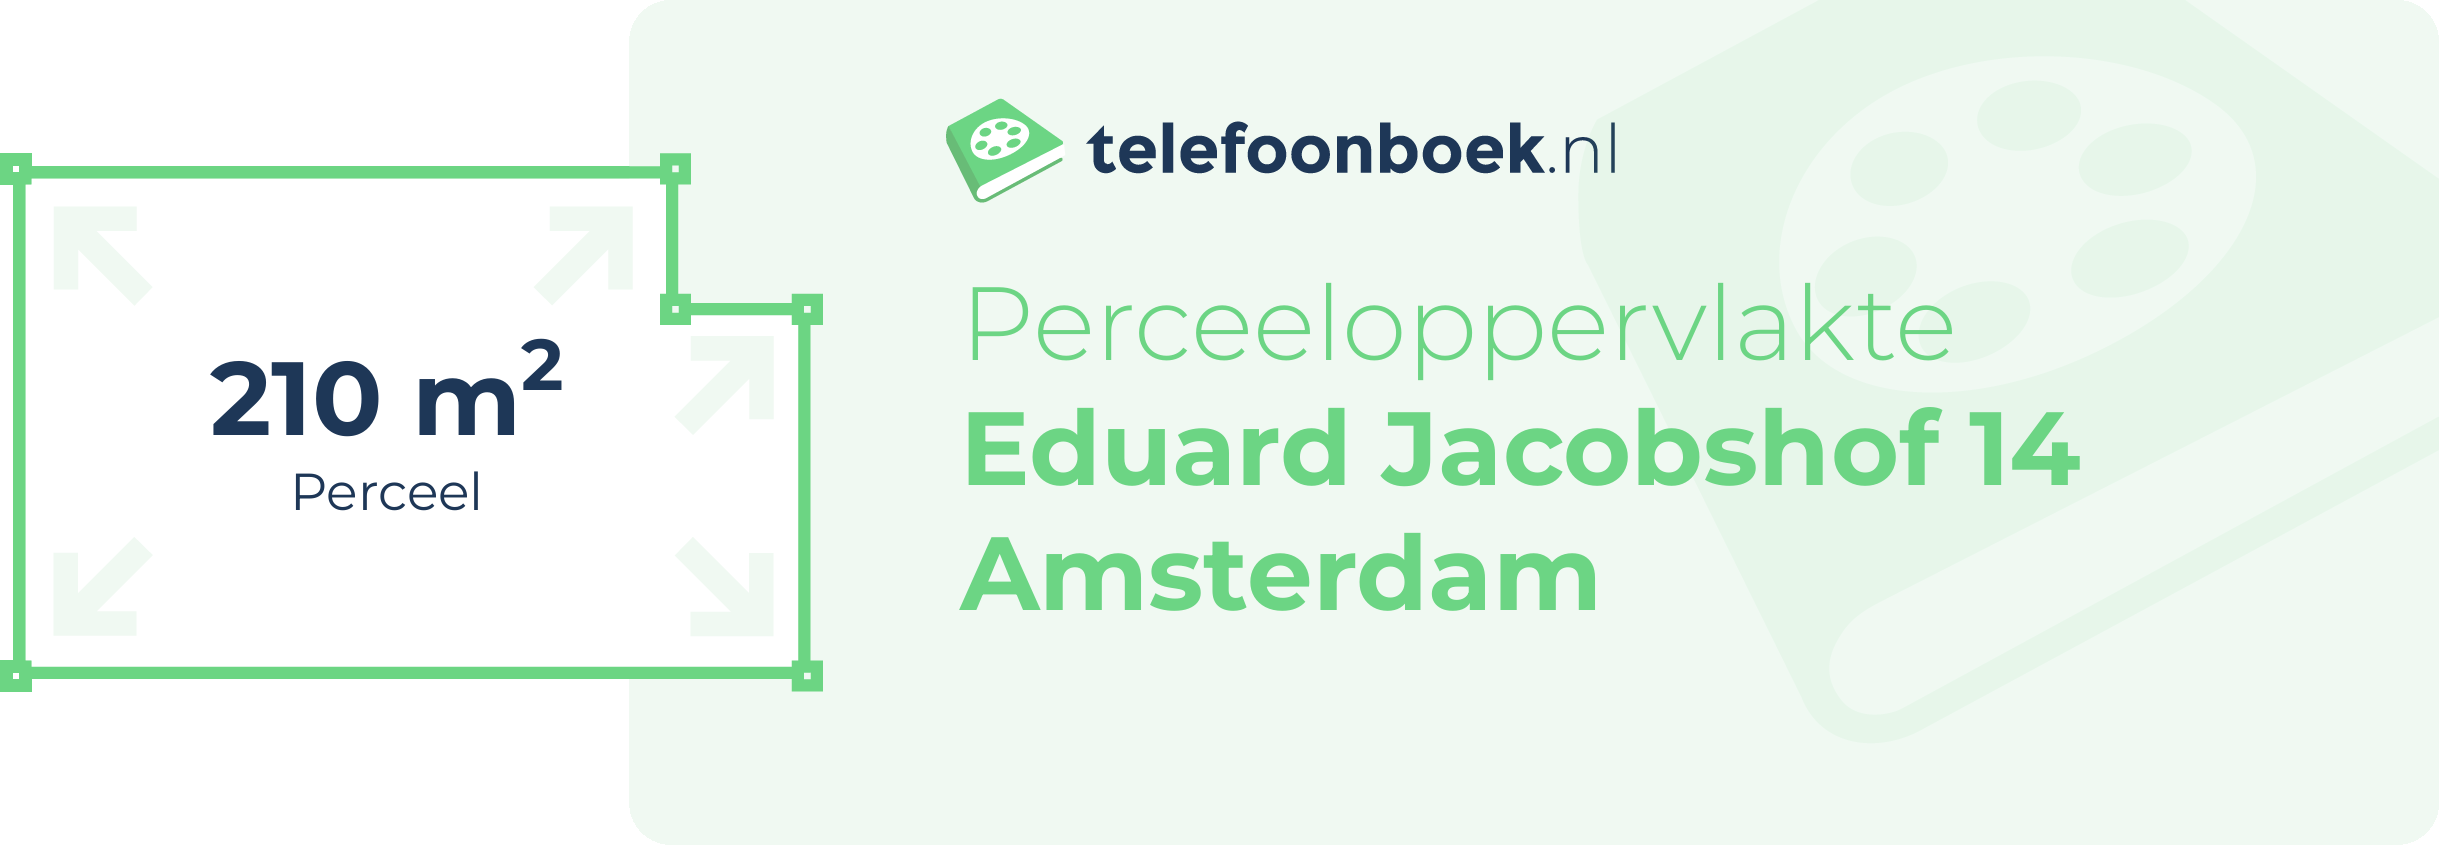 Perceeloppervlakte Eduard Jacobshof 14 Amsterdam